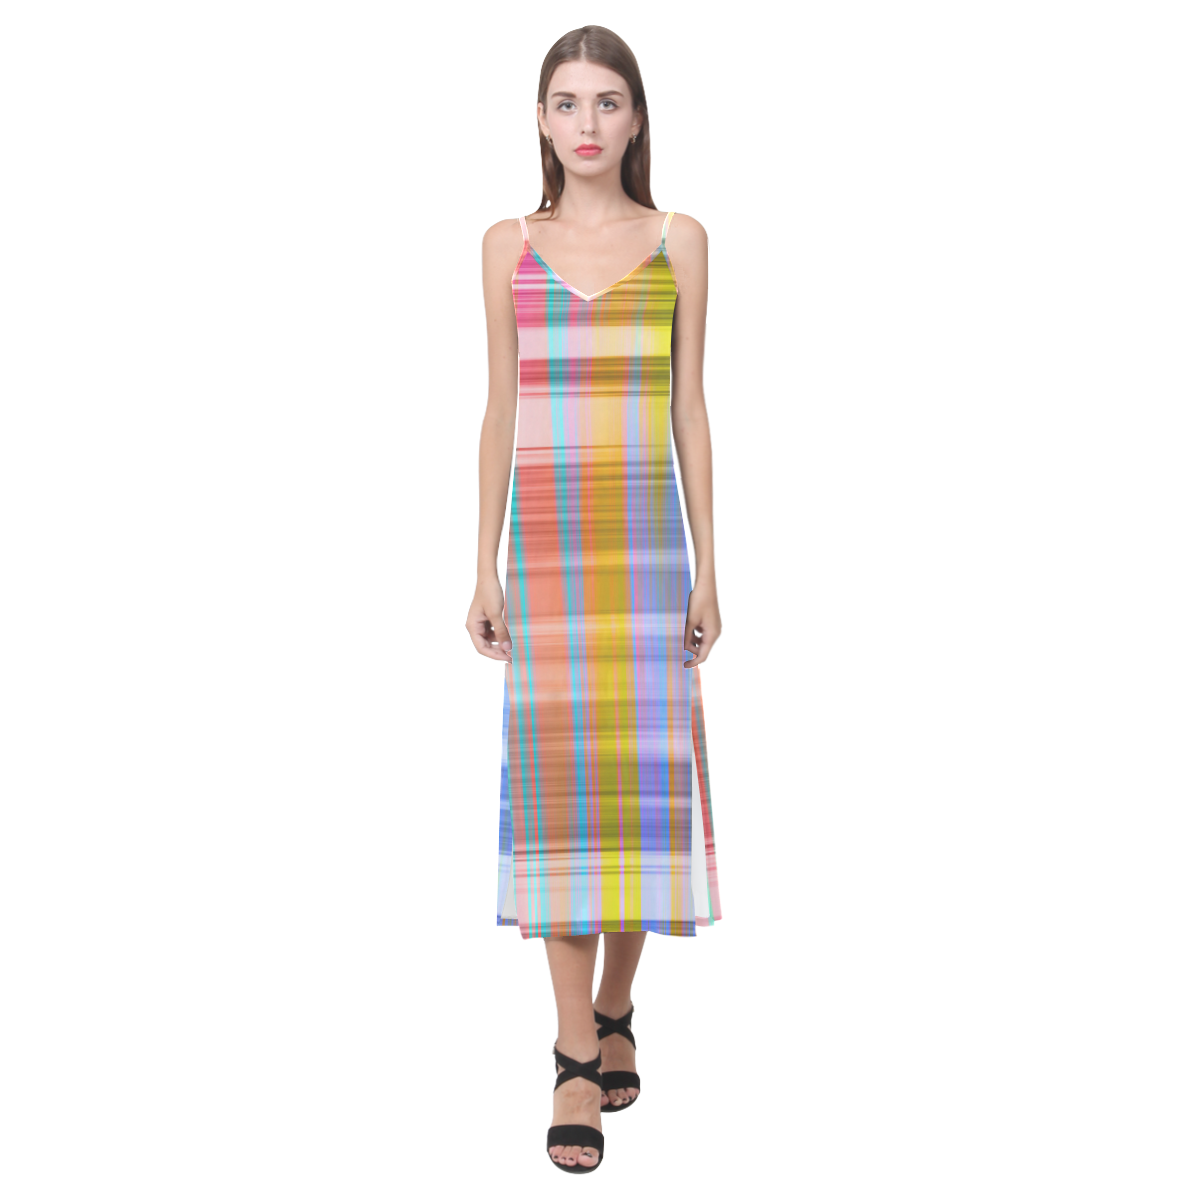 Stripes 20161005 V-Neck Open Fork Long Dress(Model D18)